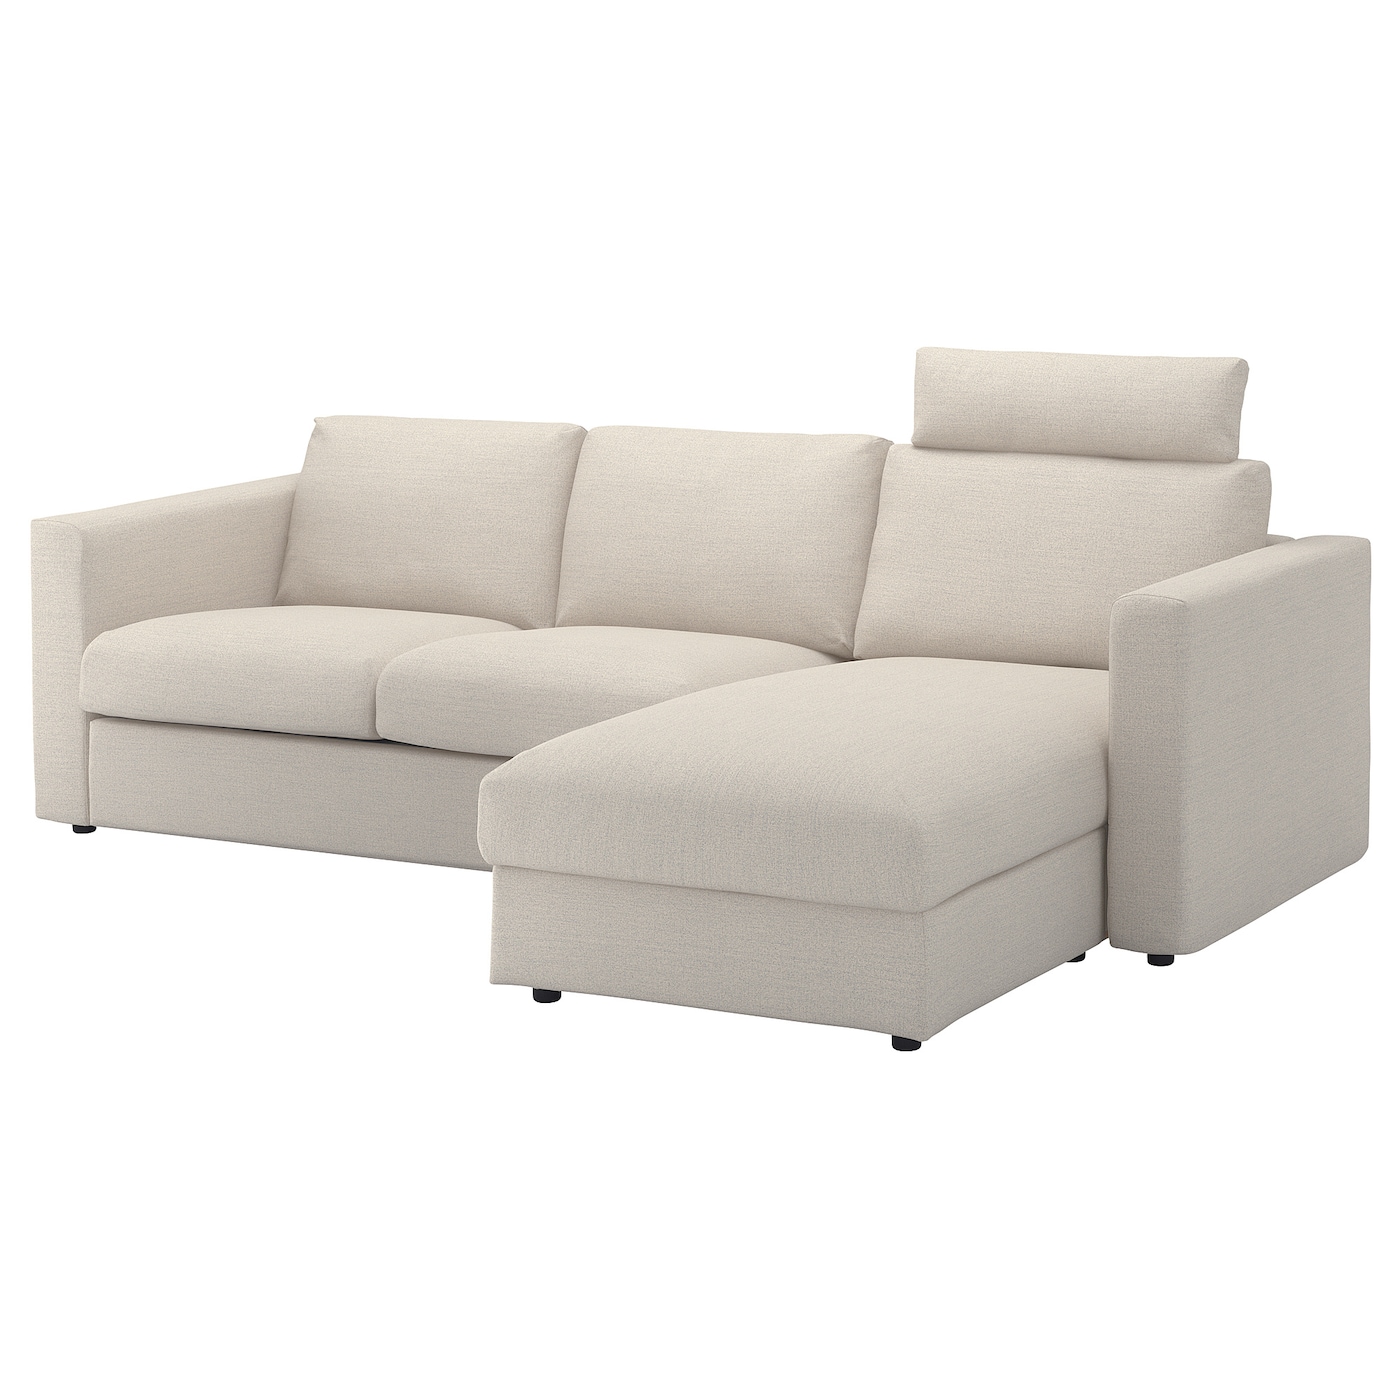 3-местный диван - IKEA VIMLE, 98x252см, бежевый, ВИМЛЕ ИКЕА